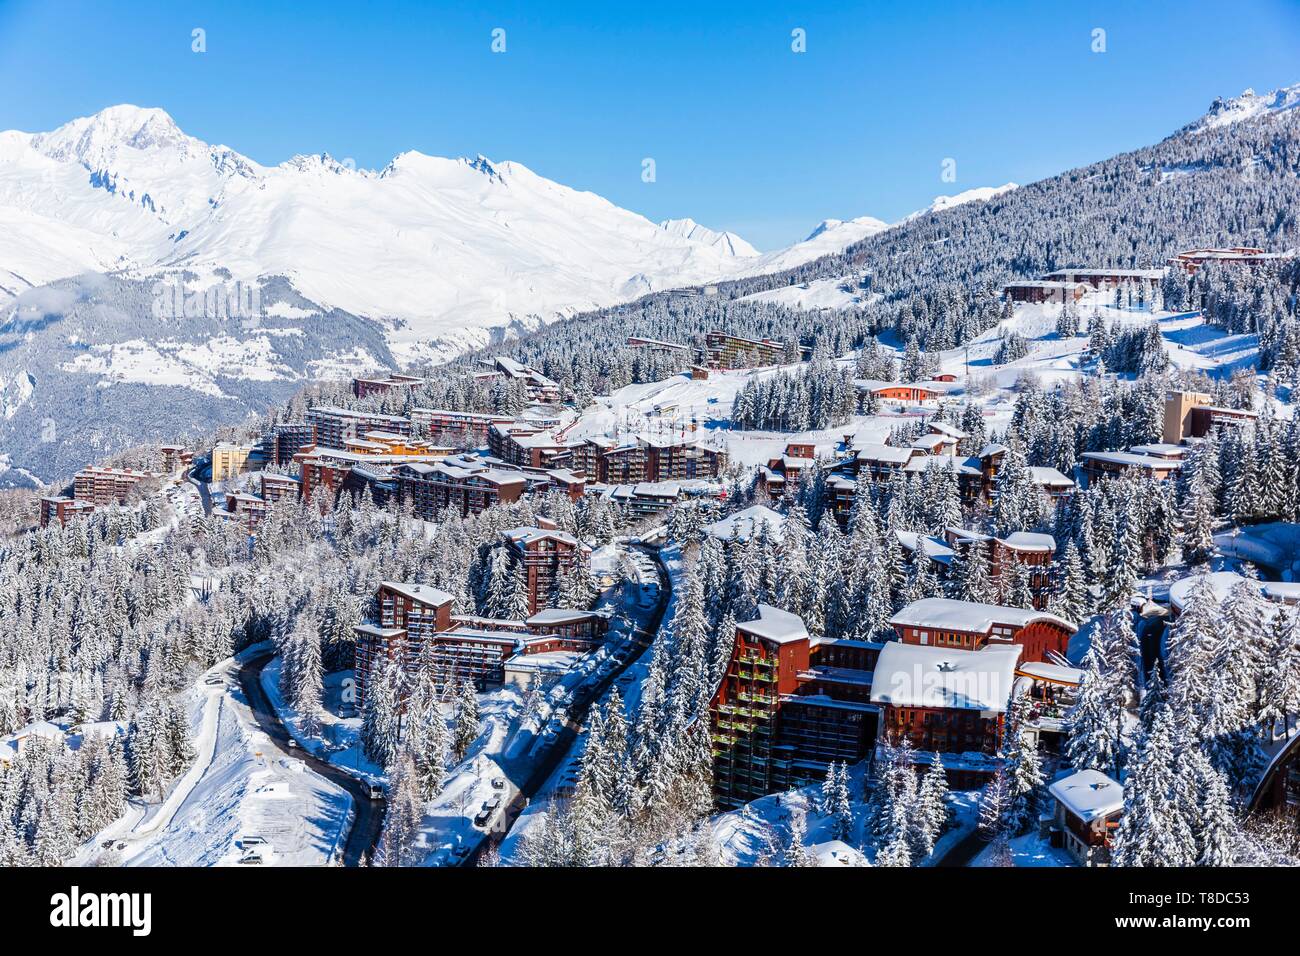 Francia, Savoie, massiccio della Vanoise, valle della Haute Tarentaise, Les Arcs 1800, parte dell'area di Paradiski, la vista del Monte Bianco (4810m) (vista aerea) Foto Stock